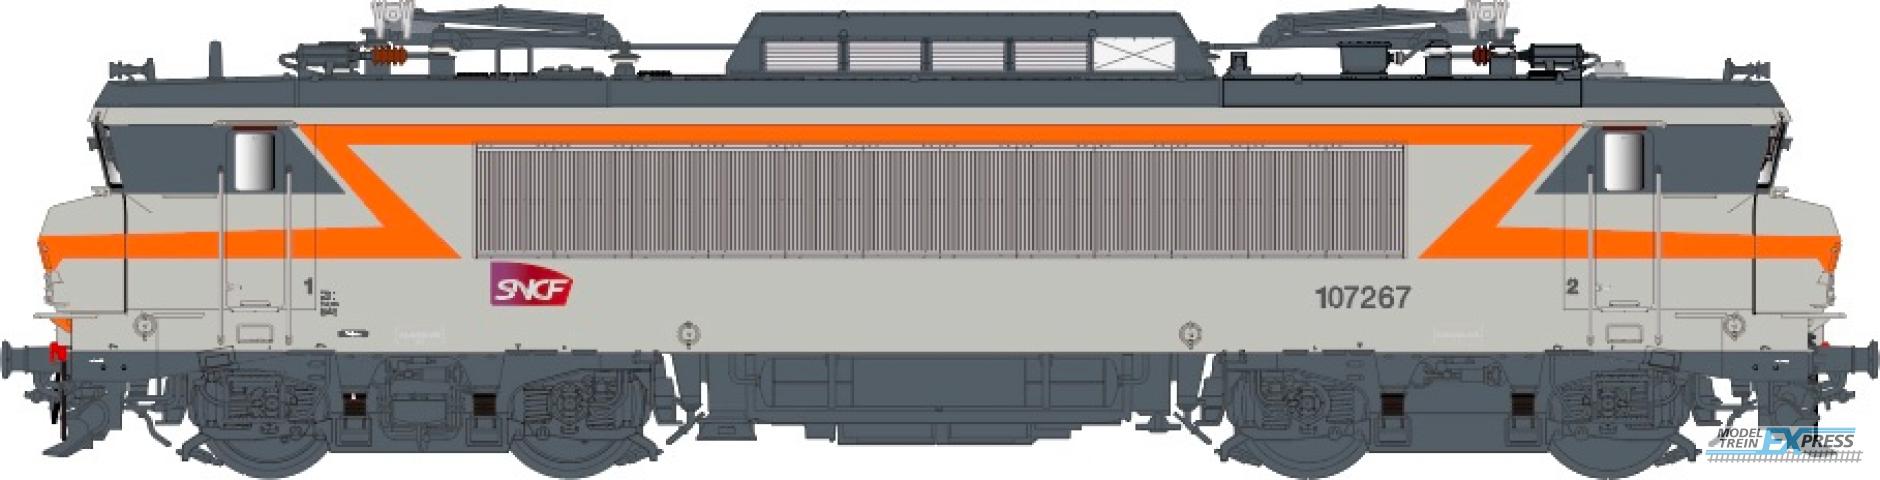 LS Models 11706 BB107267, betongrijs/oranje, Carmillon-logo, depot Toulouse / Ep. VI / SNCF / HO / AC / 1 P.